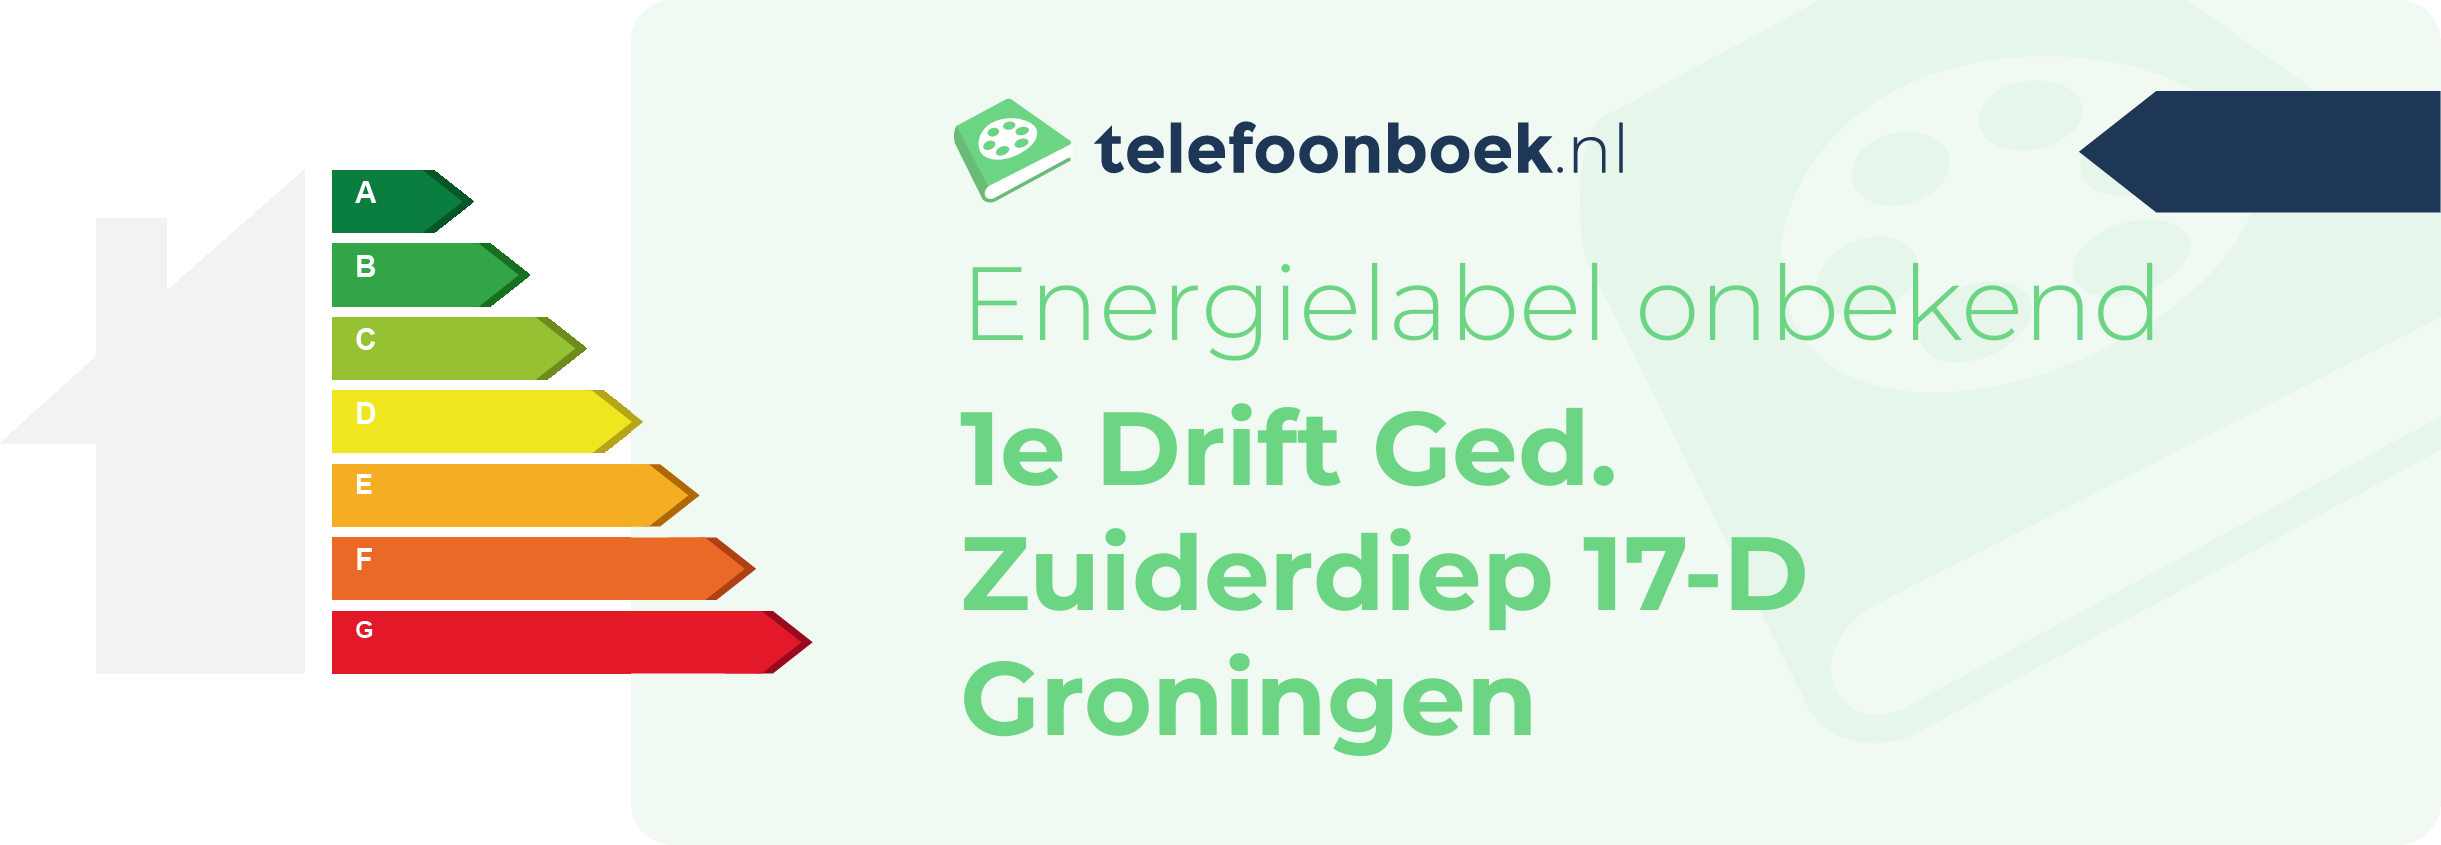 Energielabel 1e Drift Ged. Zuiderdiep 17-D Groningen